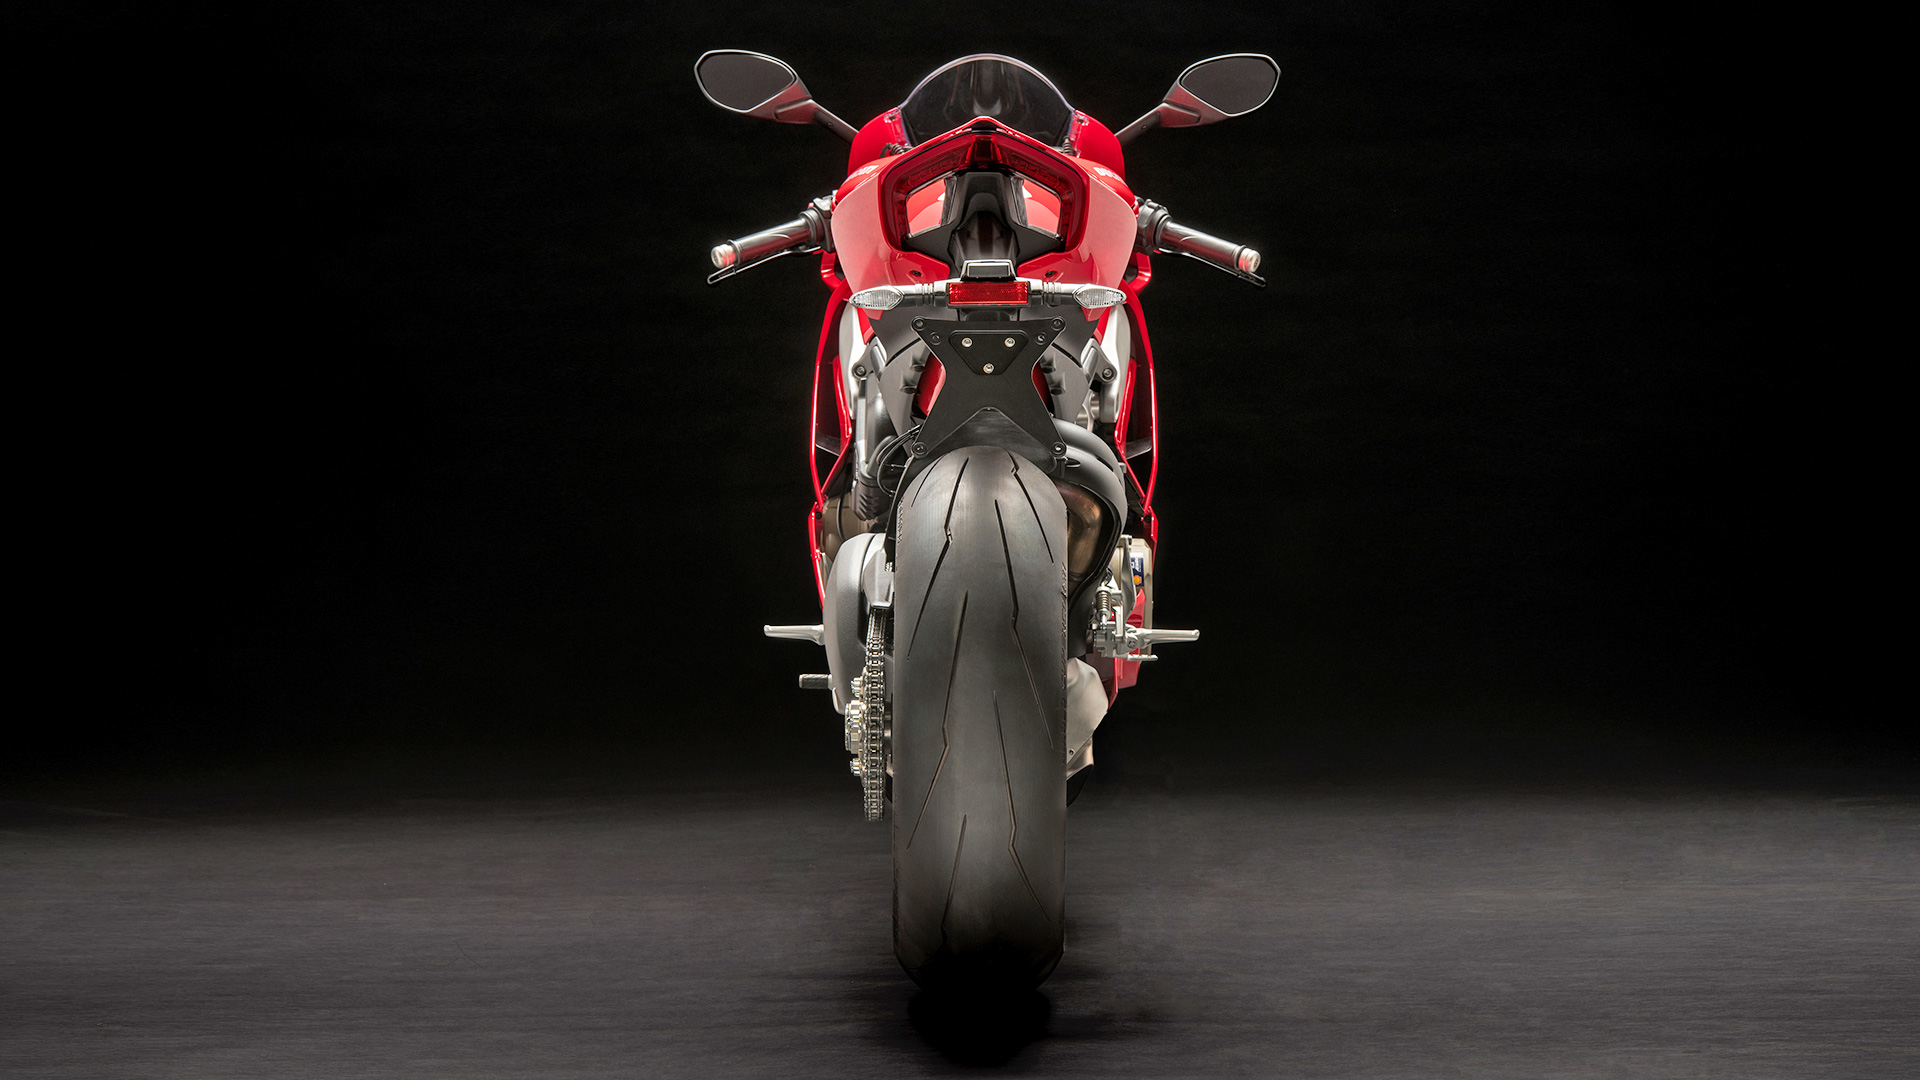 Ducati Panigale V4 2018 S